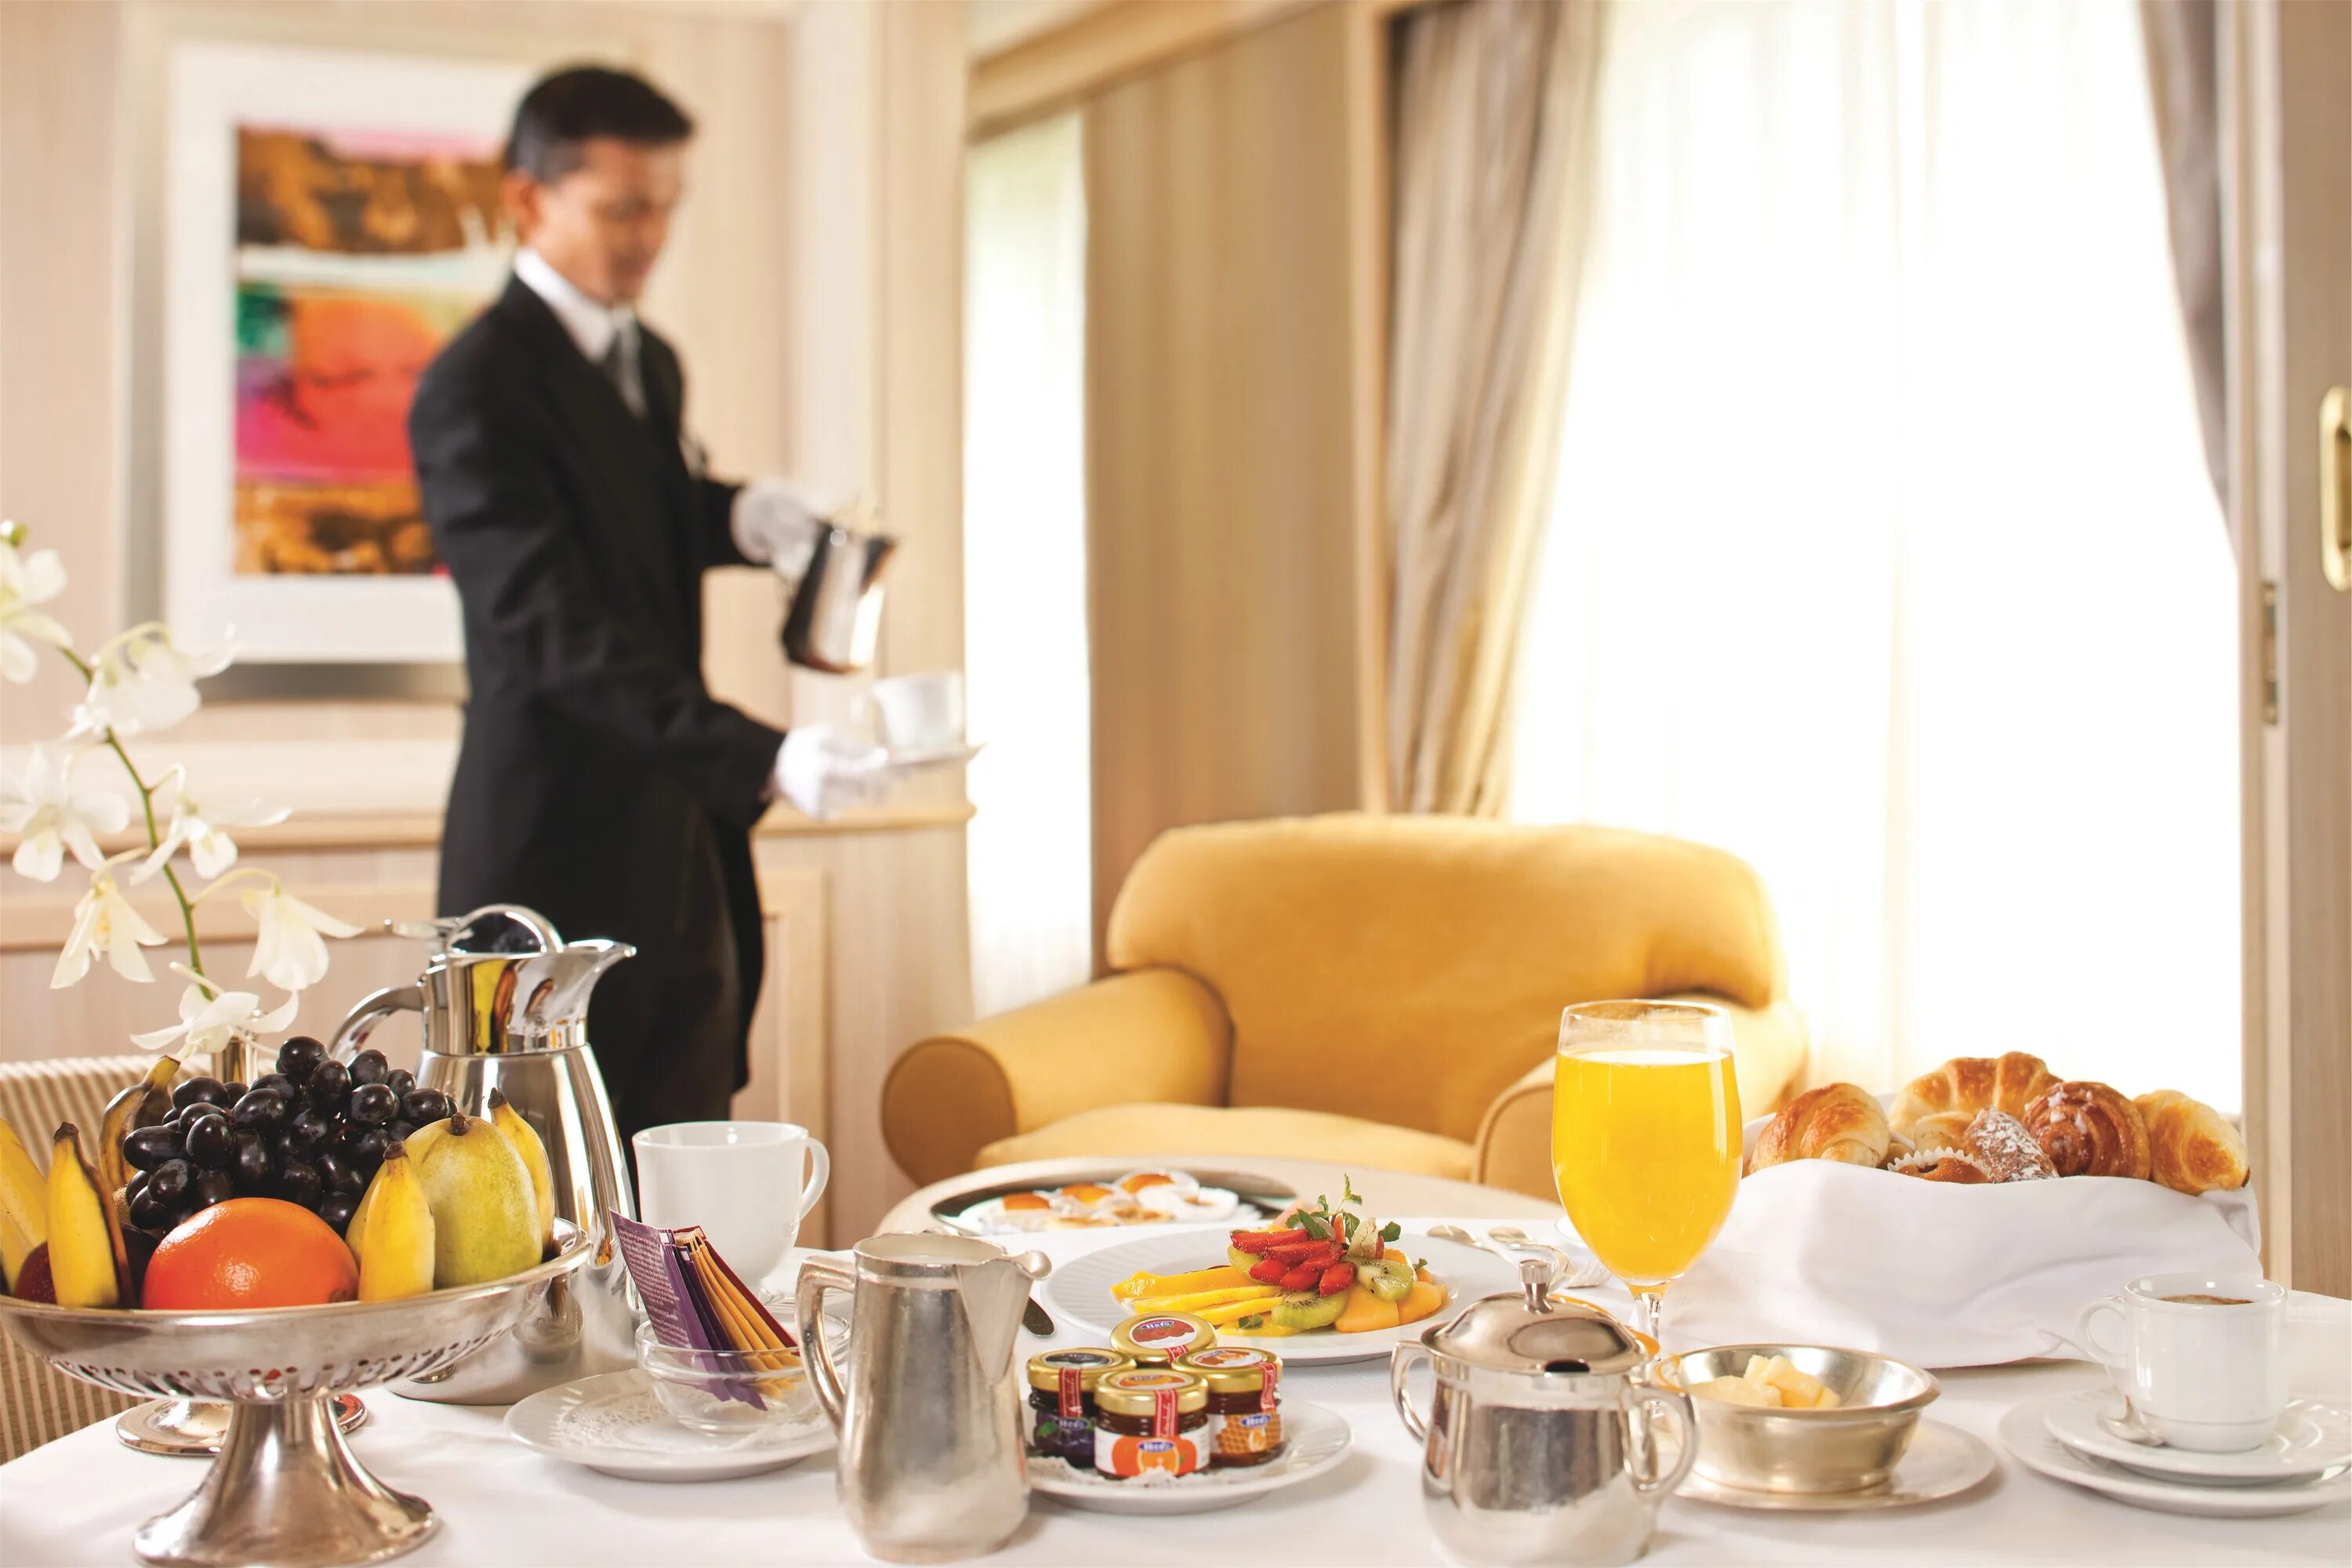 Рум сервис в гостинице. Завтрак в отеле рум сервис. Завтрак в гостинице. Завтрак в номере отеля.